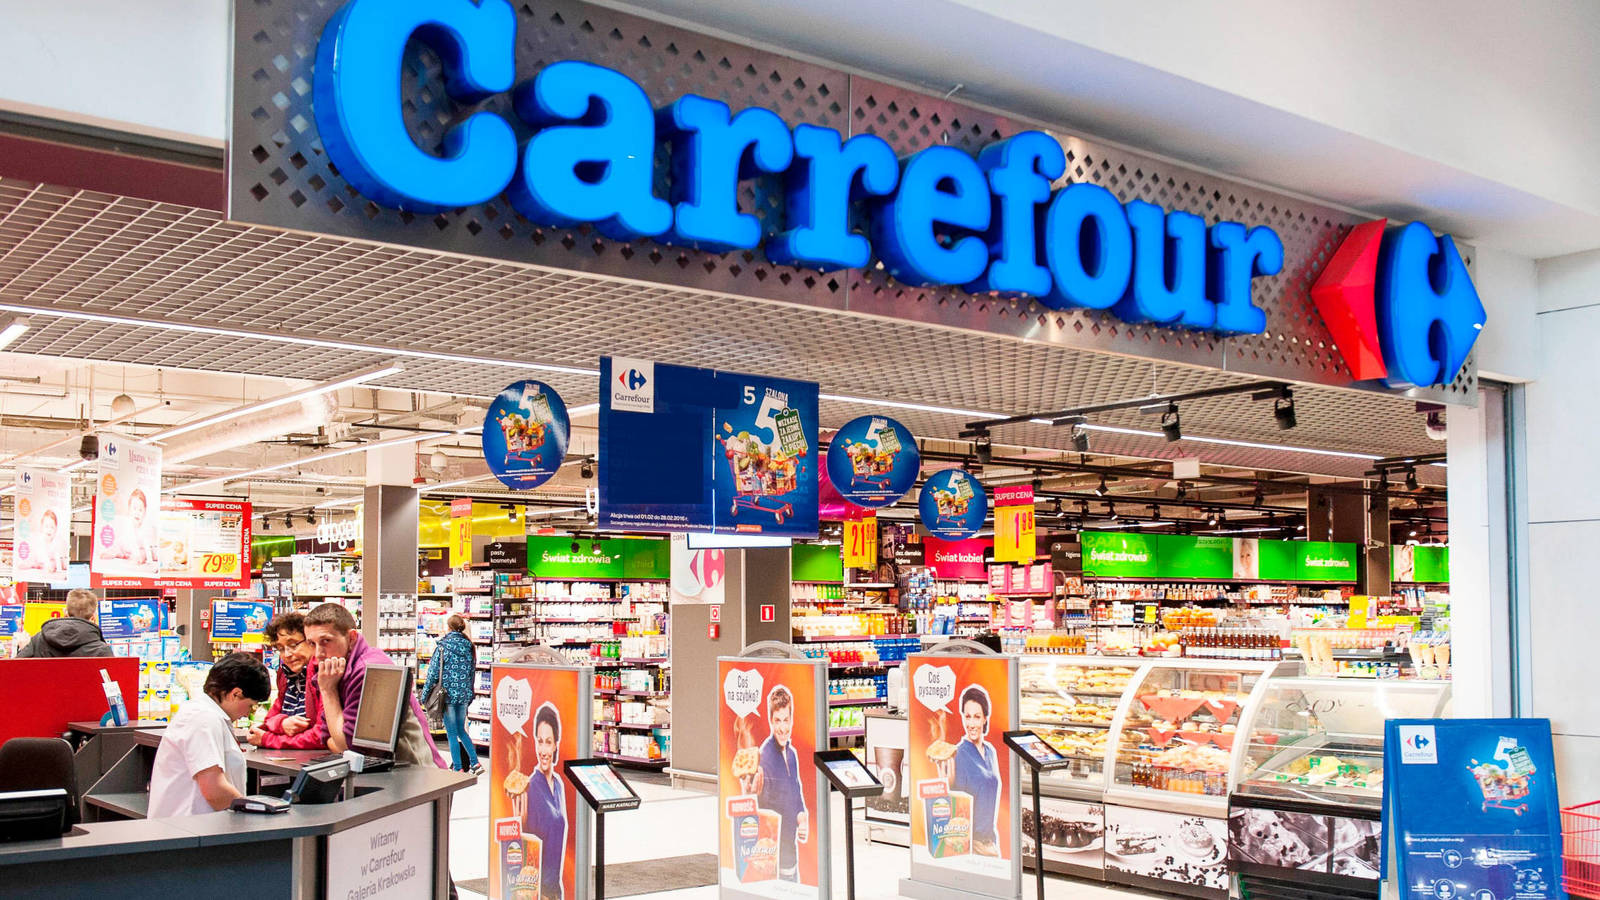 Productos argentinos en el Carrefour de España #argentina #españa